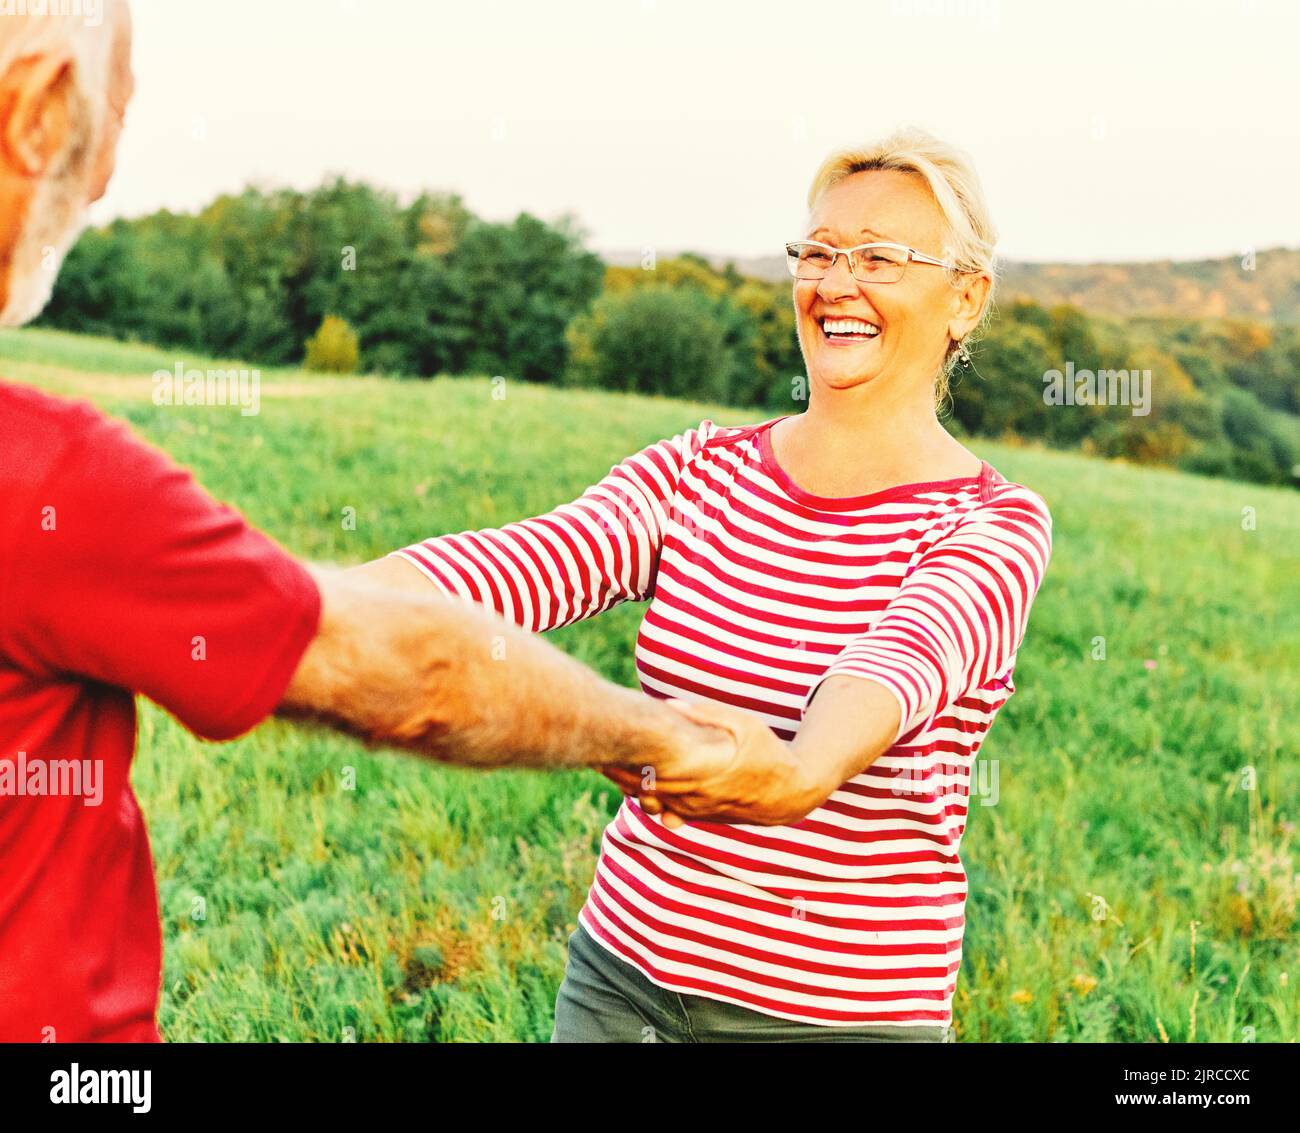 Frau Mann Outdoor Senior Paar glücklich Lifestyle Ruhestand zusammen lächelnd Liebe tanzen Spaß spielen Spiel aktiv Vitalität Natur reif Stockfoto